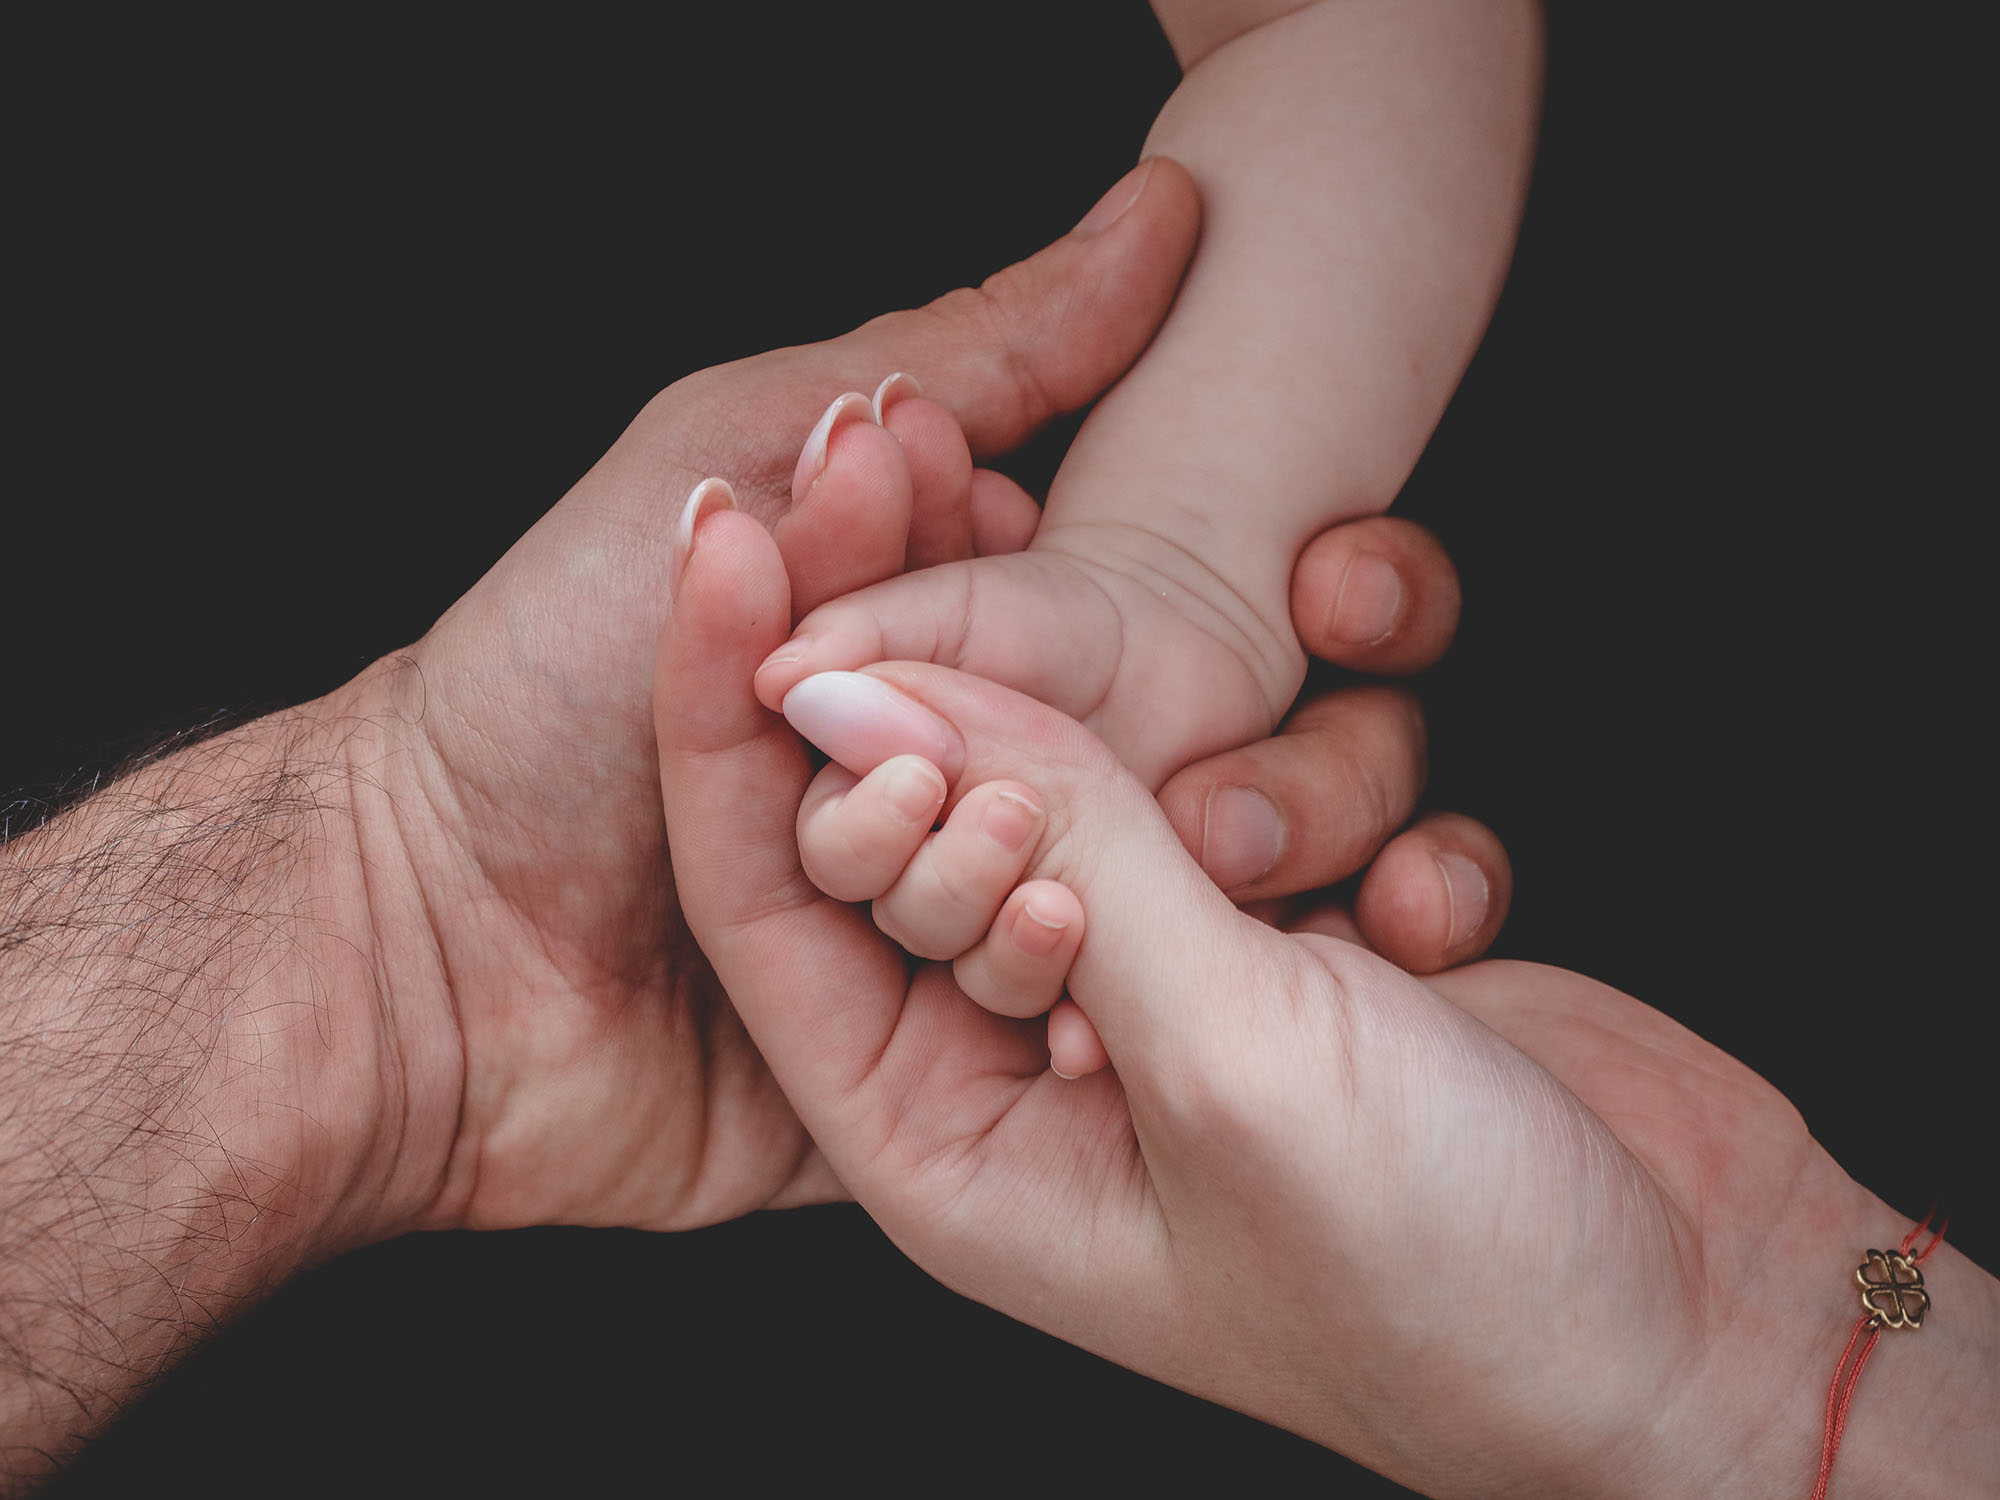 Handed family. Младенец на руках. Родители с младенцем на руках. Руки родителей. Ручки малыша в руках родителей.